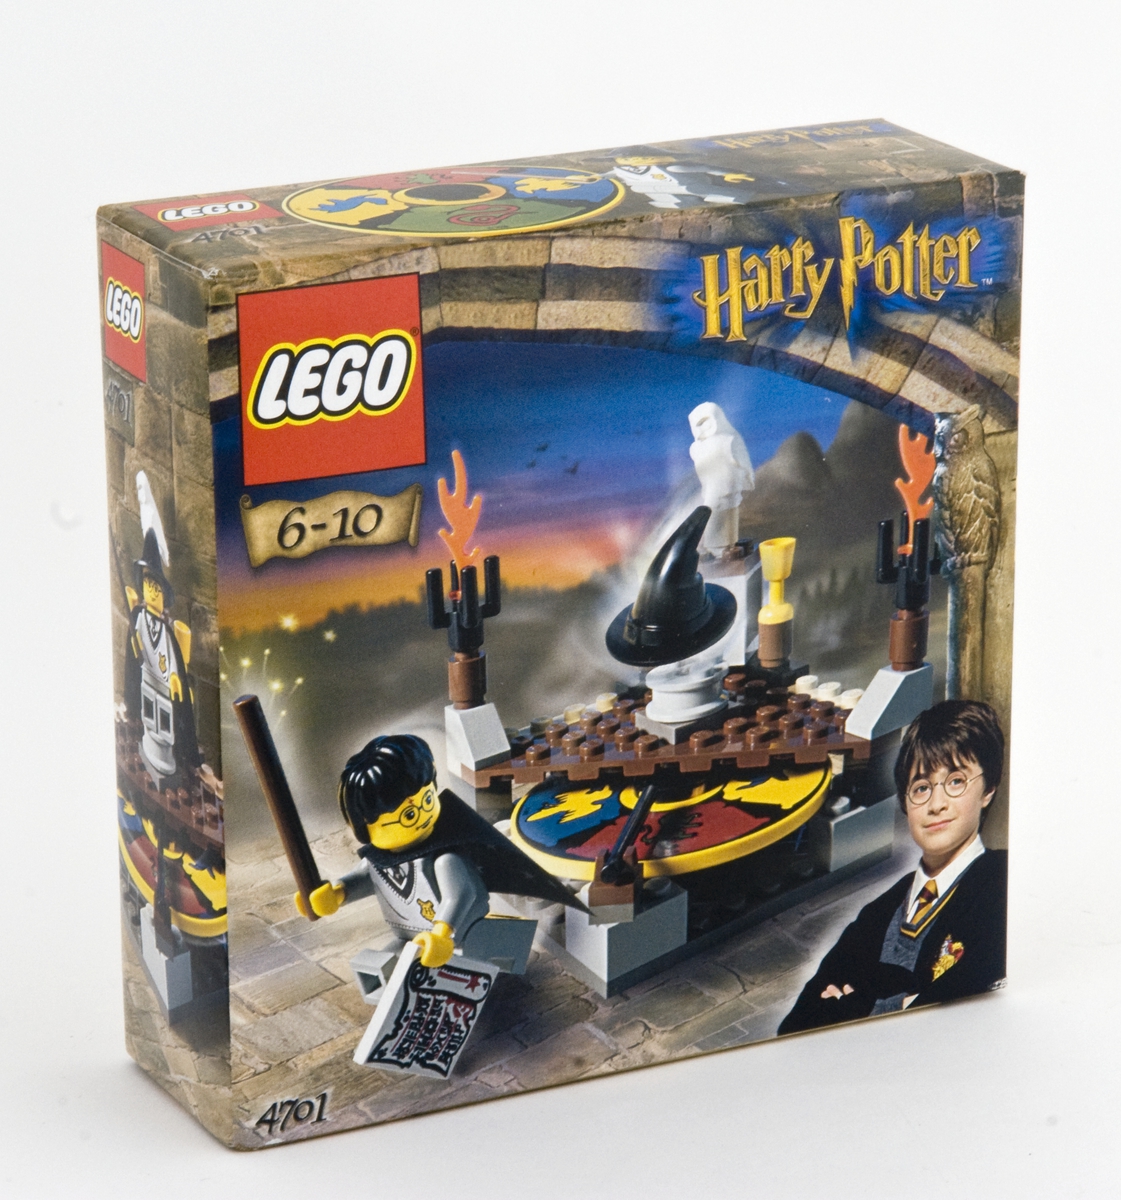 Lego beregnet på barn i alderen 6-10 år. 
Ett sett er bygd ferdig, men museet har originalpakningene (2). Byggesettene ligger i originalpakningen. Legosettet har nr.  4701. Nummeret indikerer hvilken del av den totale Harry Potter-borgen lego-settet tilhører. 